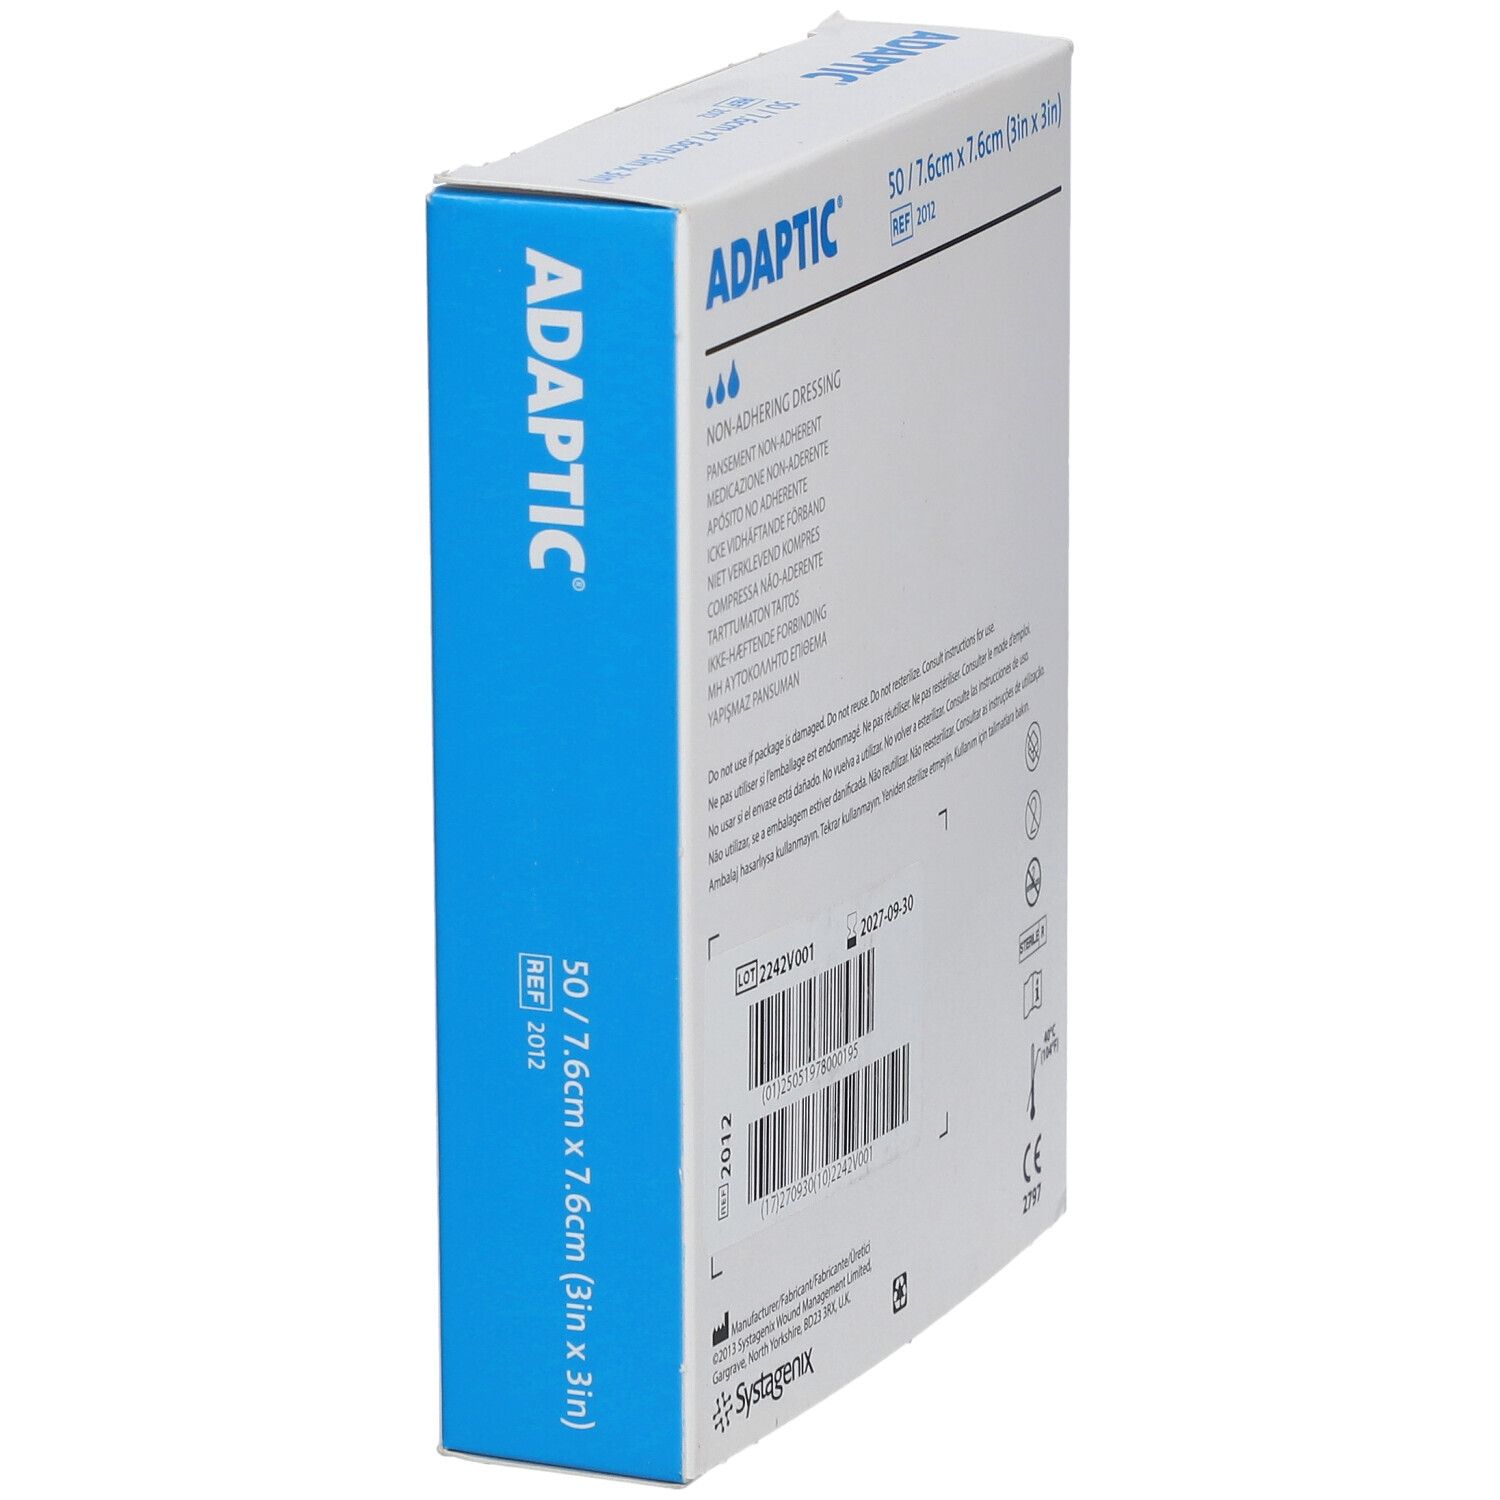 ADAPTIC® Medicazione Non-Aderente7.6 cmx 7.6 cm